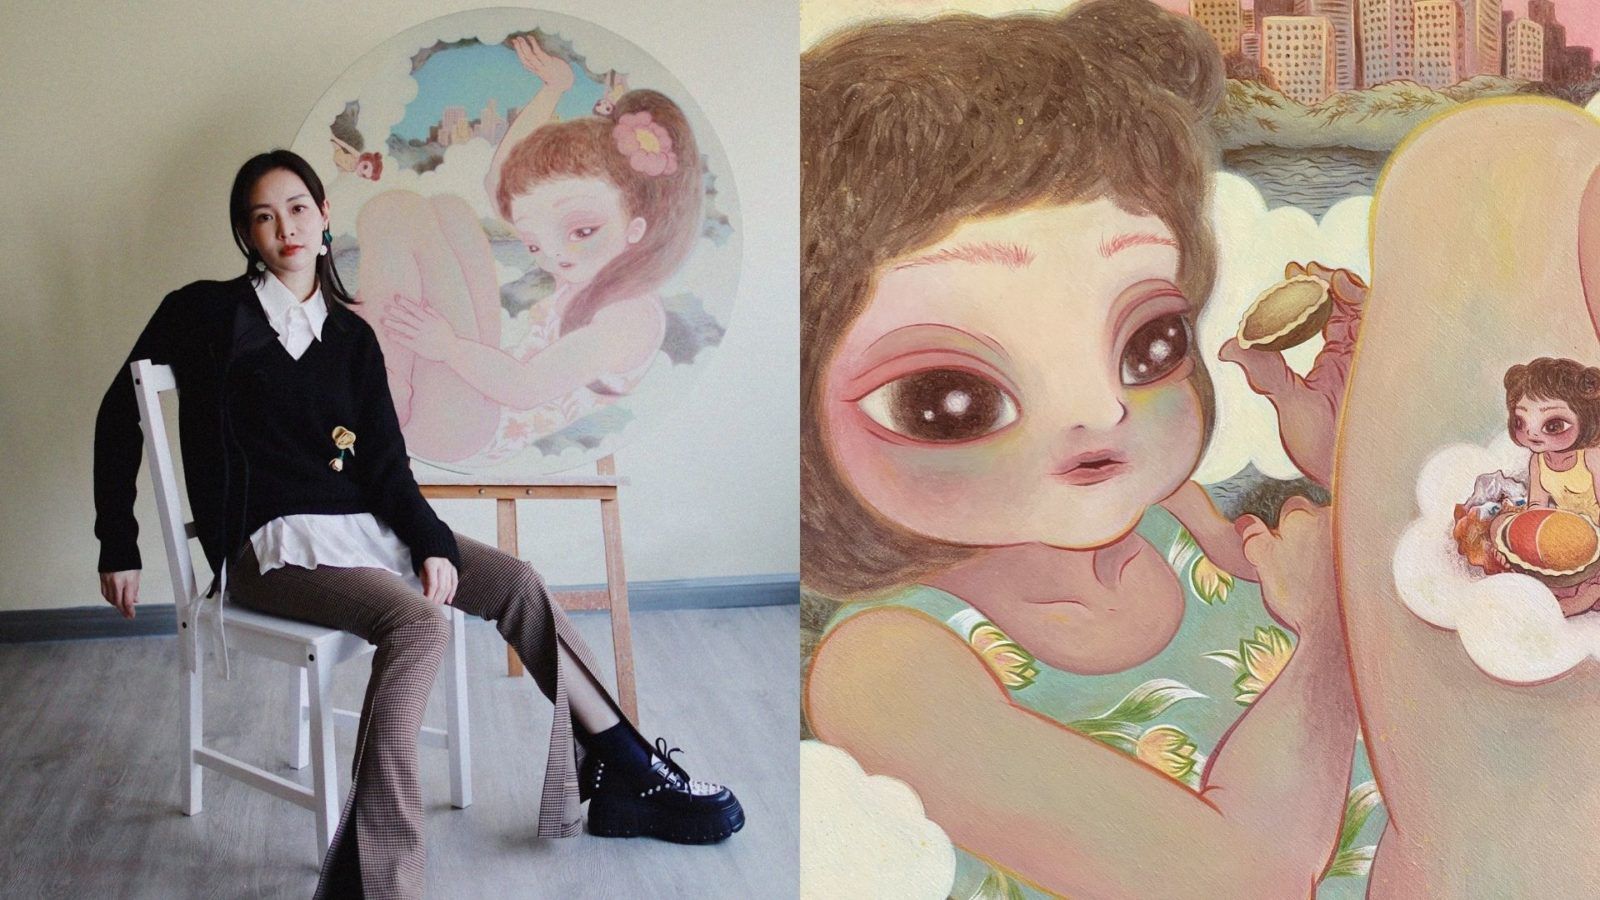 Hong Kong artist Afa Annfa is taking us all home through ‘The Magical Hoop’